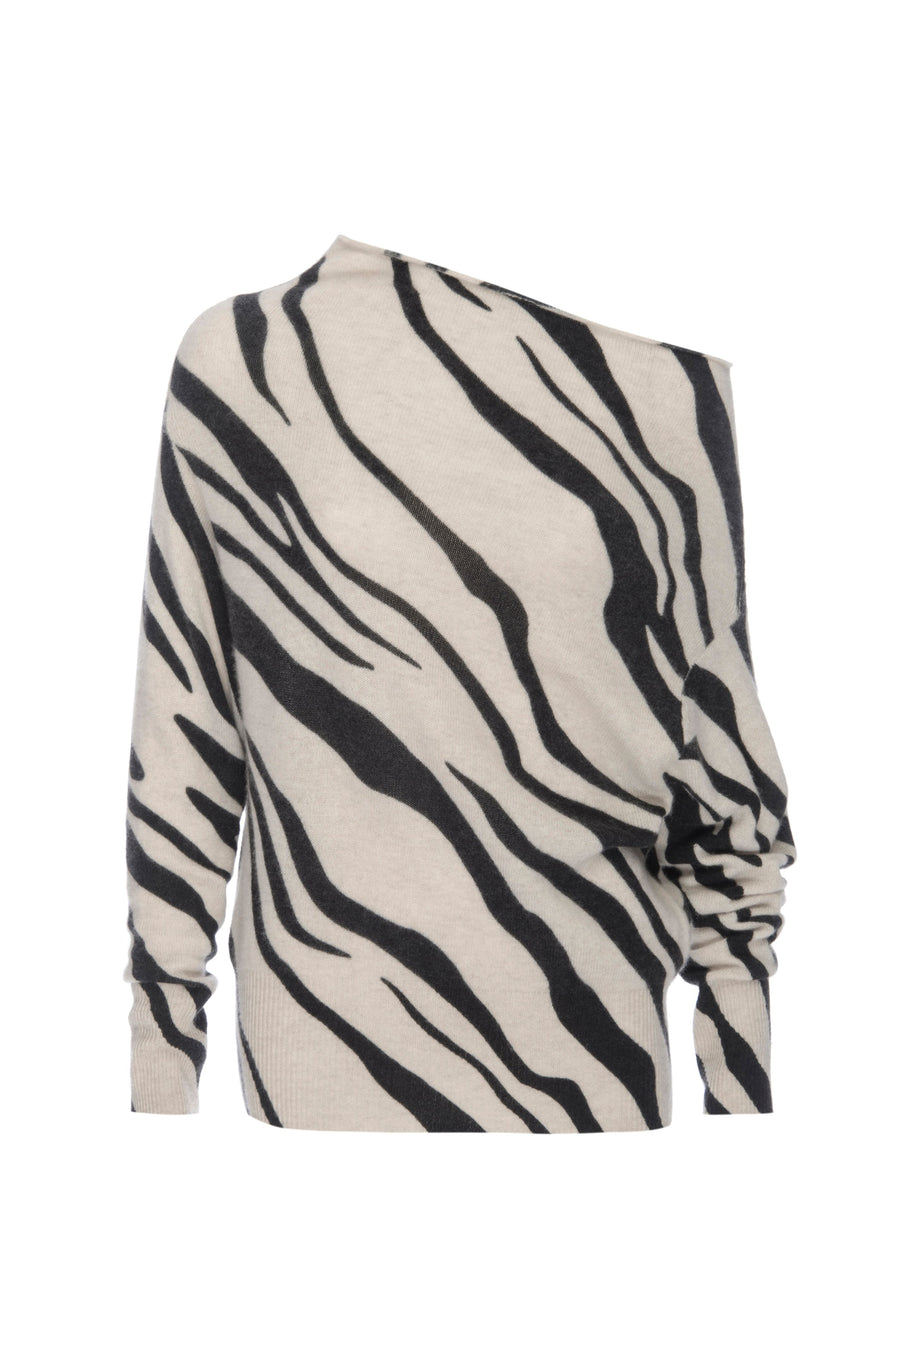 Lori cashmere off shoulder zebra print sweater flat view